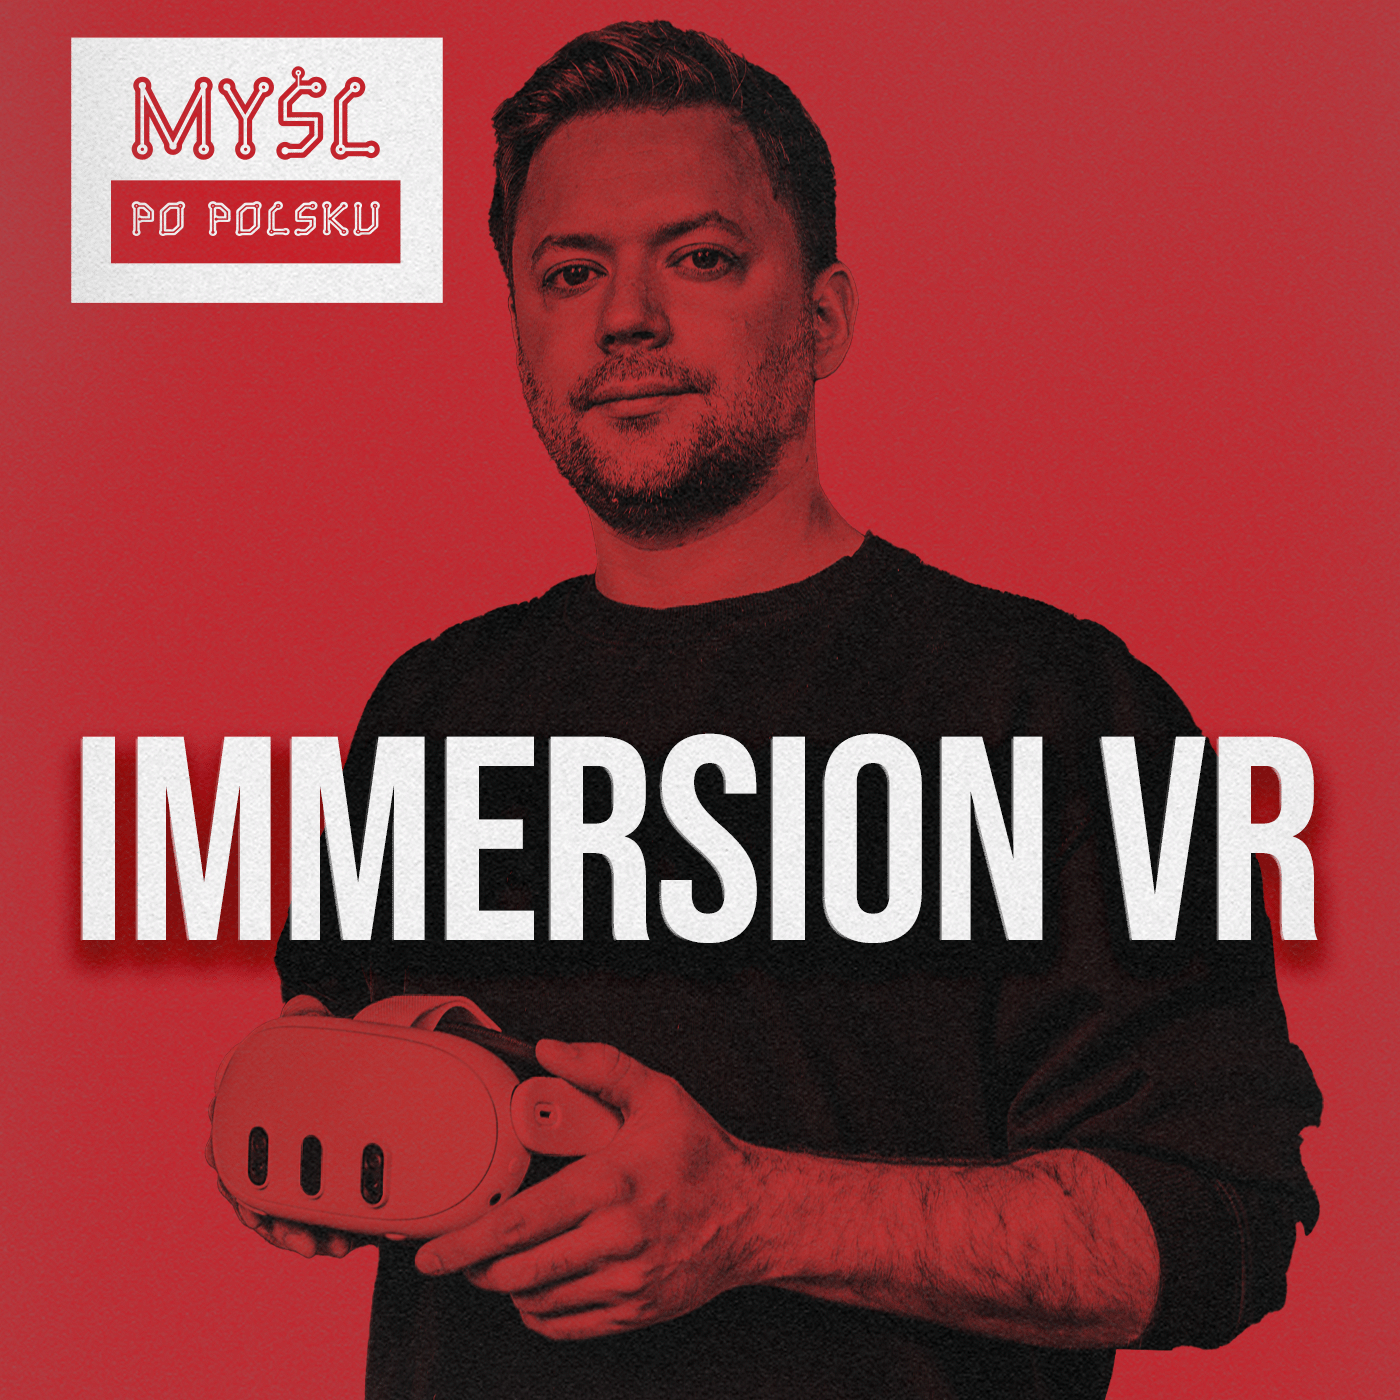 Immersion VR - Edukacja przyszłości